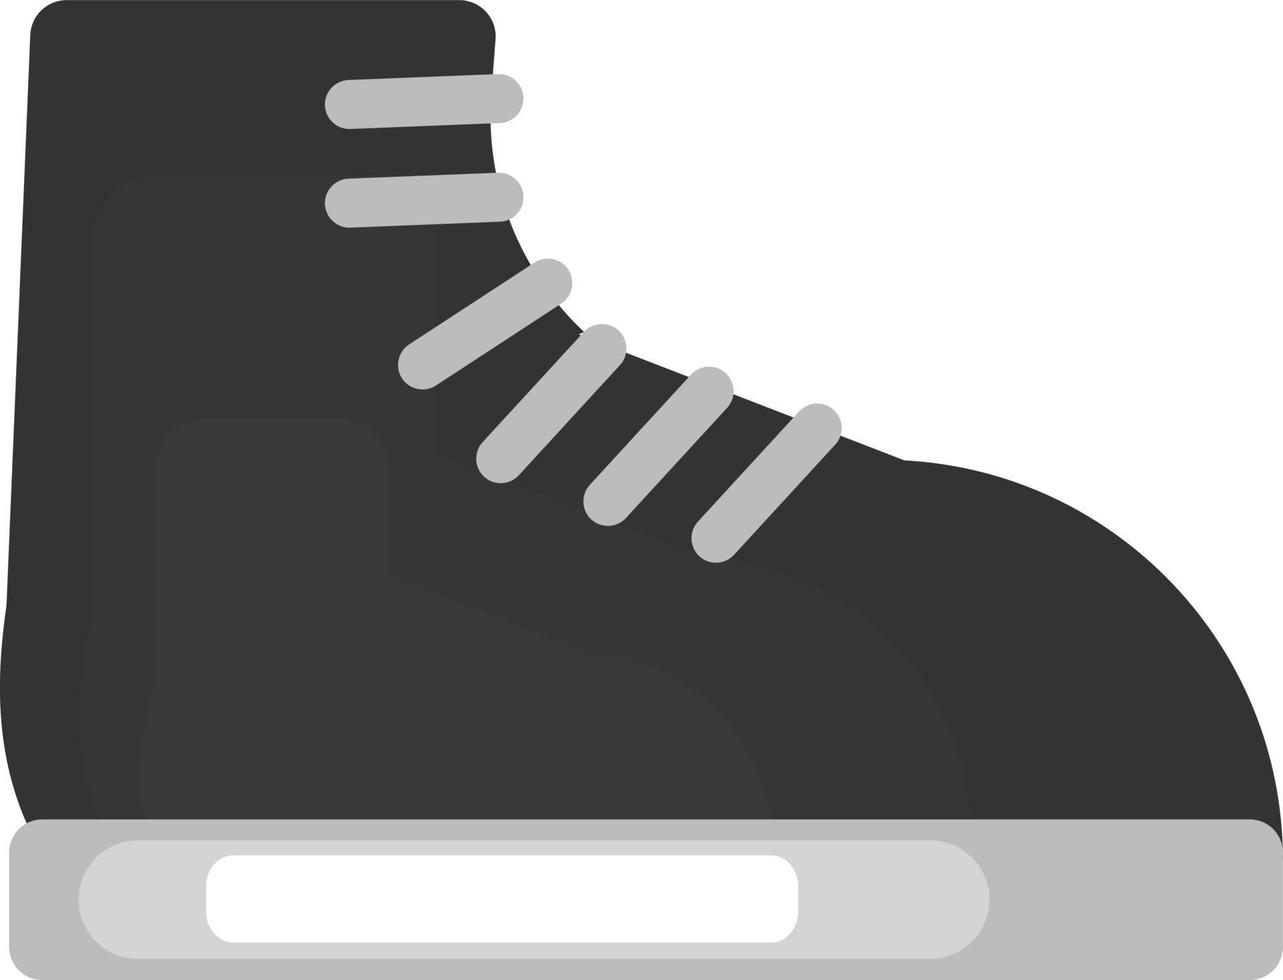 Black boot , illustration, vector on white background